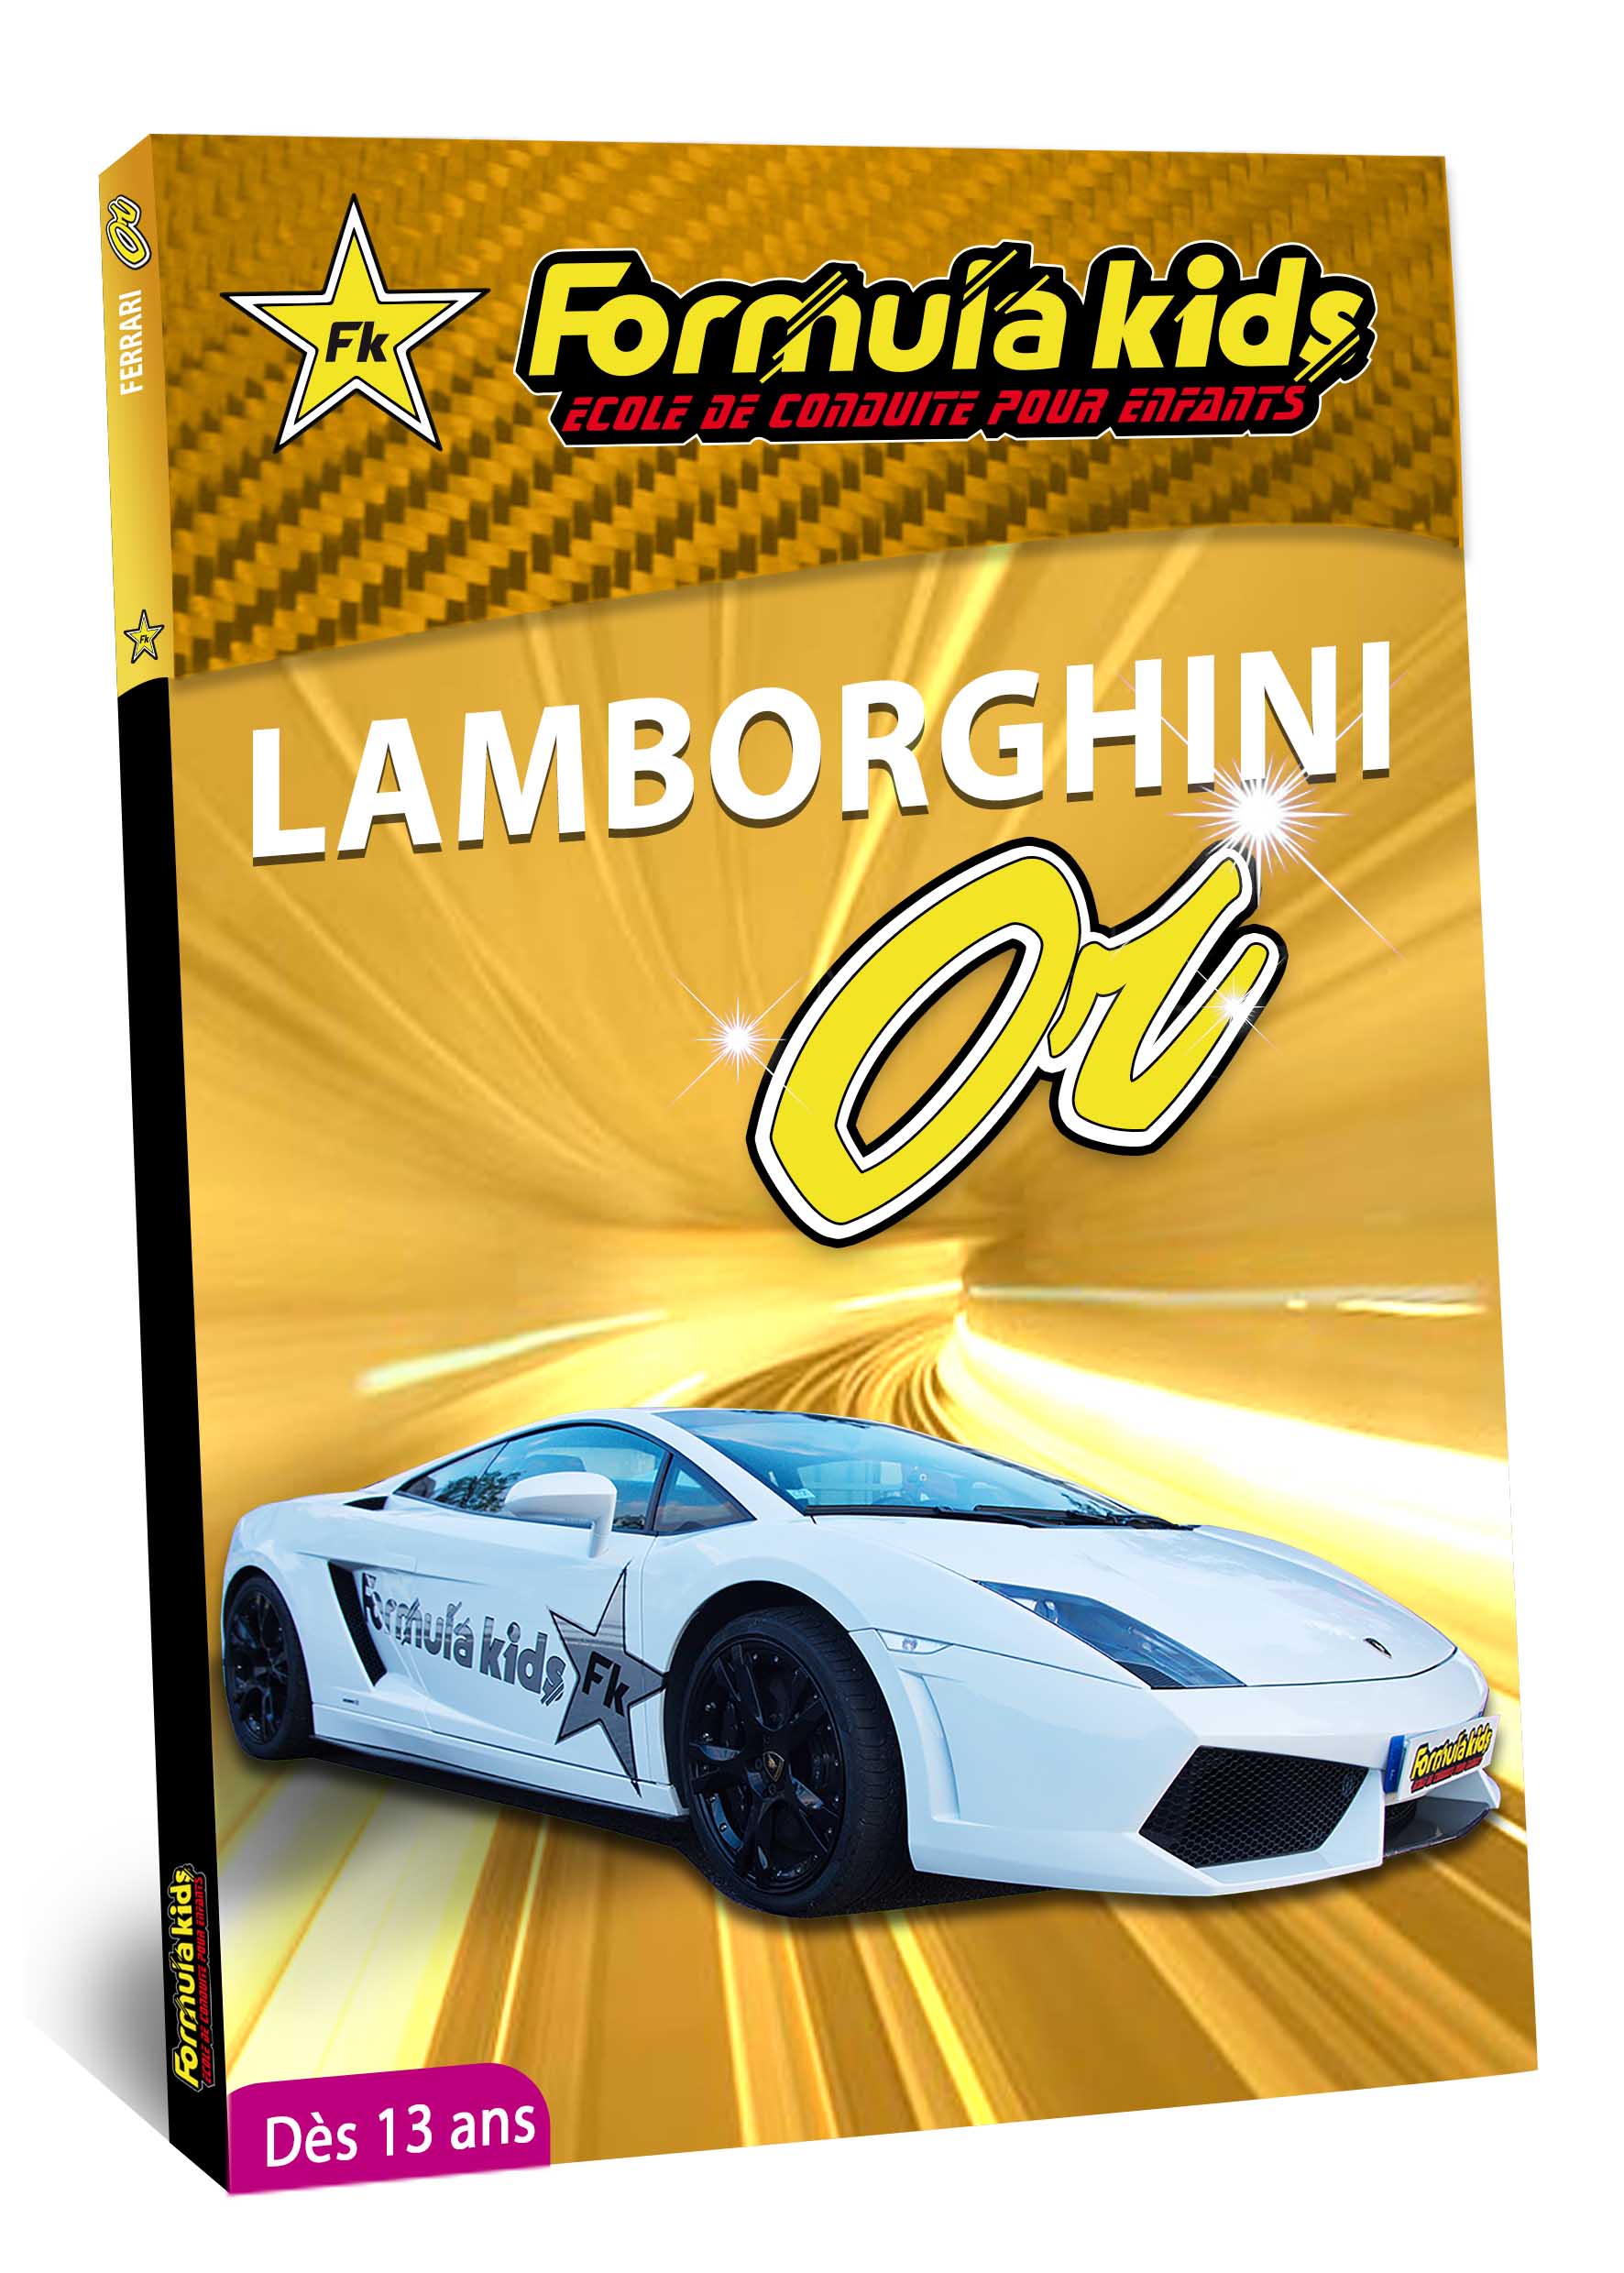 Lamborghini Or - Conduire une Lamborghini dès 7 ans - Formula Kids - Stage de conduite enfant - Stage de pilotage sur As'Phalte - Stage Junior - Gallardo LP 560 -